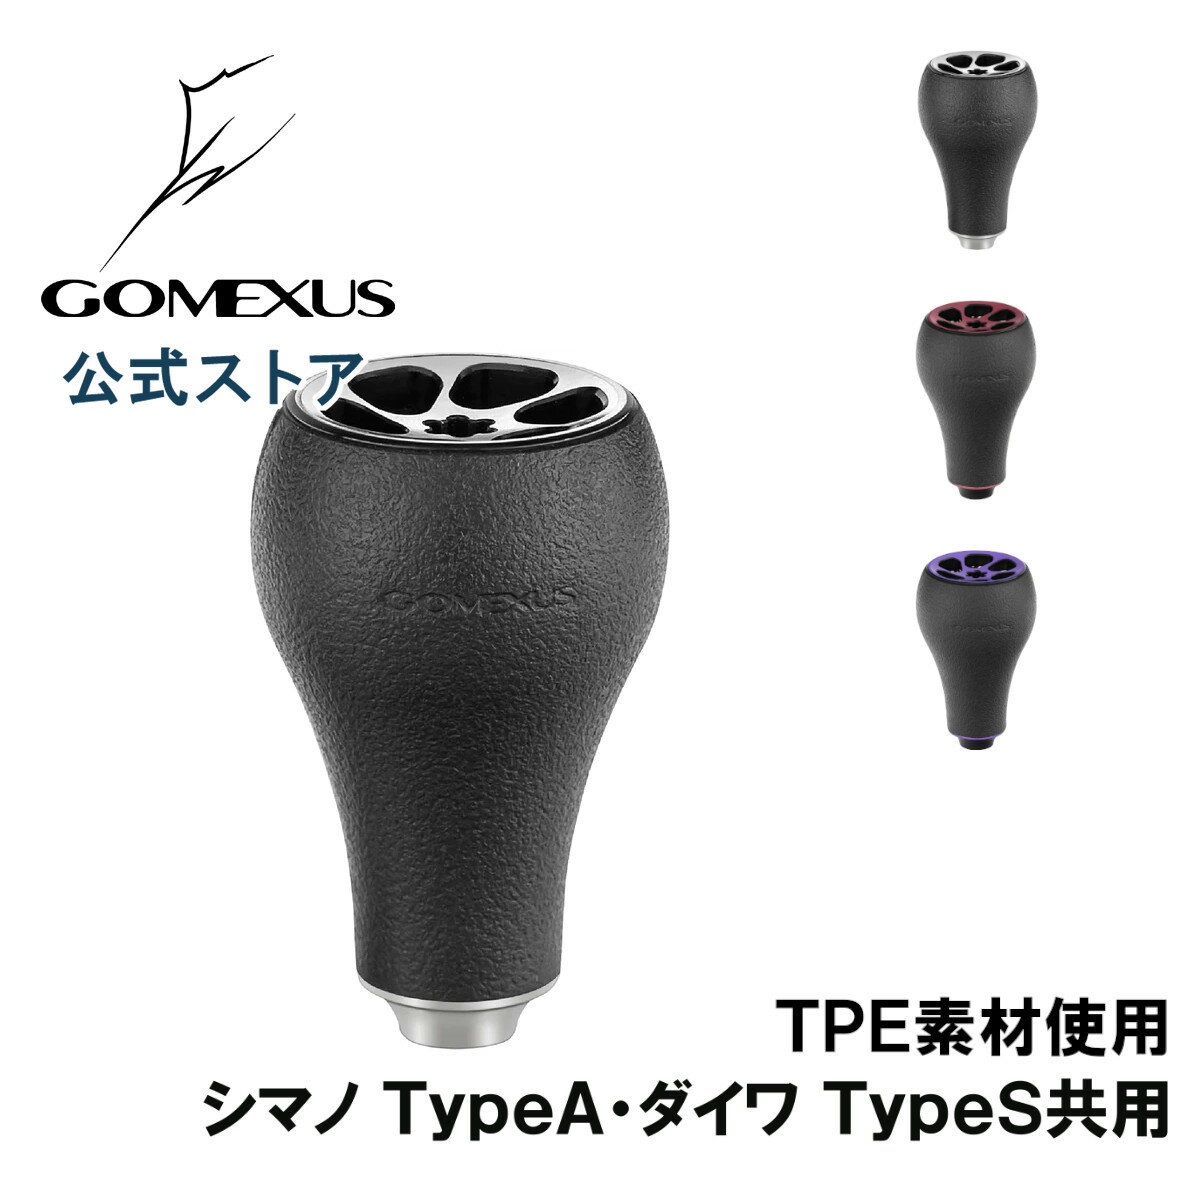 ゴメクサス パワーハンドルノブ 30mm TPE製 シマノ Shimano TypeA ダイワ Daiwa Type S リール カスタム パーツ 交換 ナスキー 18 レガリス フリームス LT 用 Gomexus